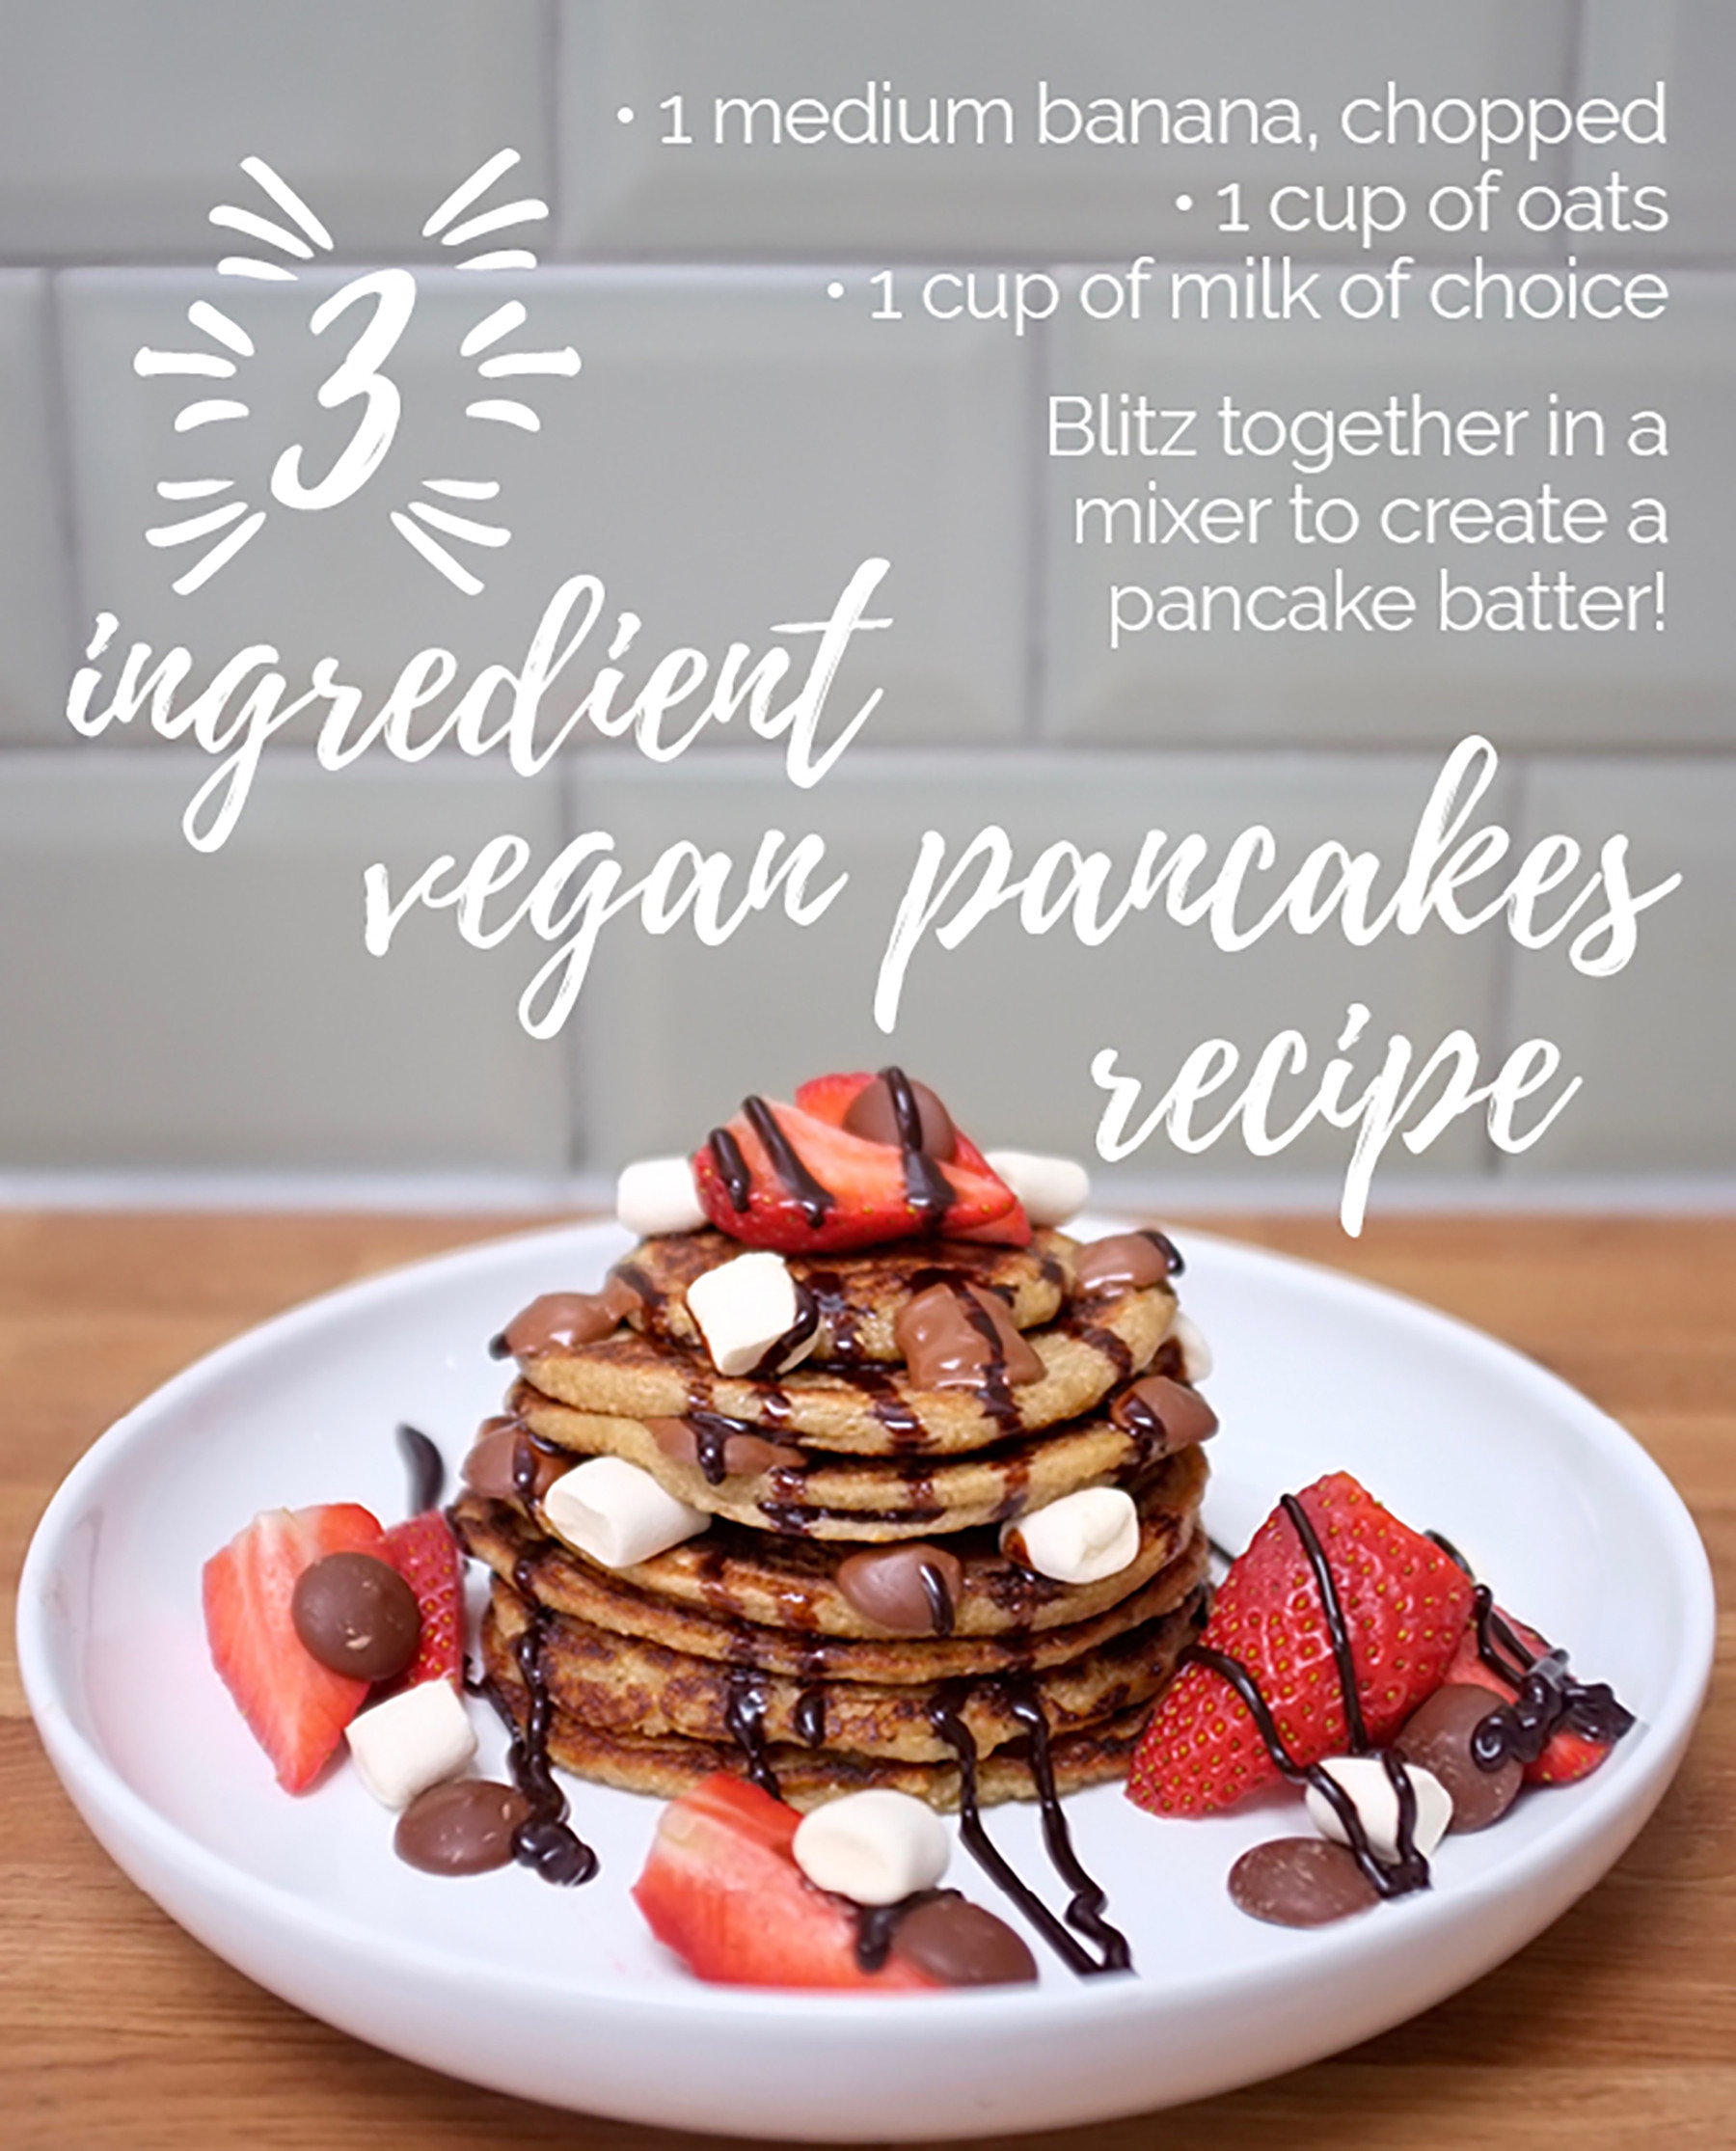 Easy Vegan Pancakes 3 Ingredients
 SUPER EASY VEGAN PANCAKE RECIPE ly 3 ingre nts